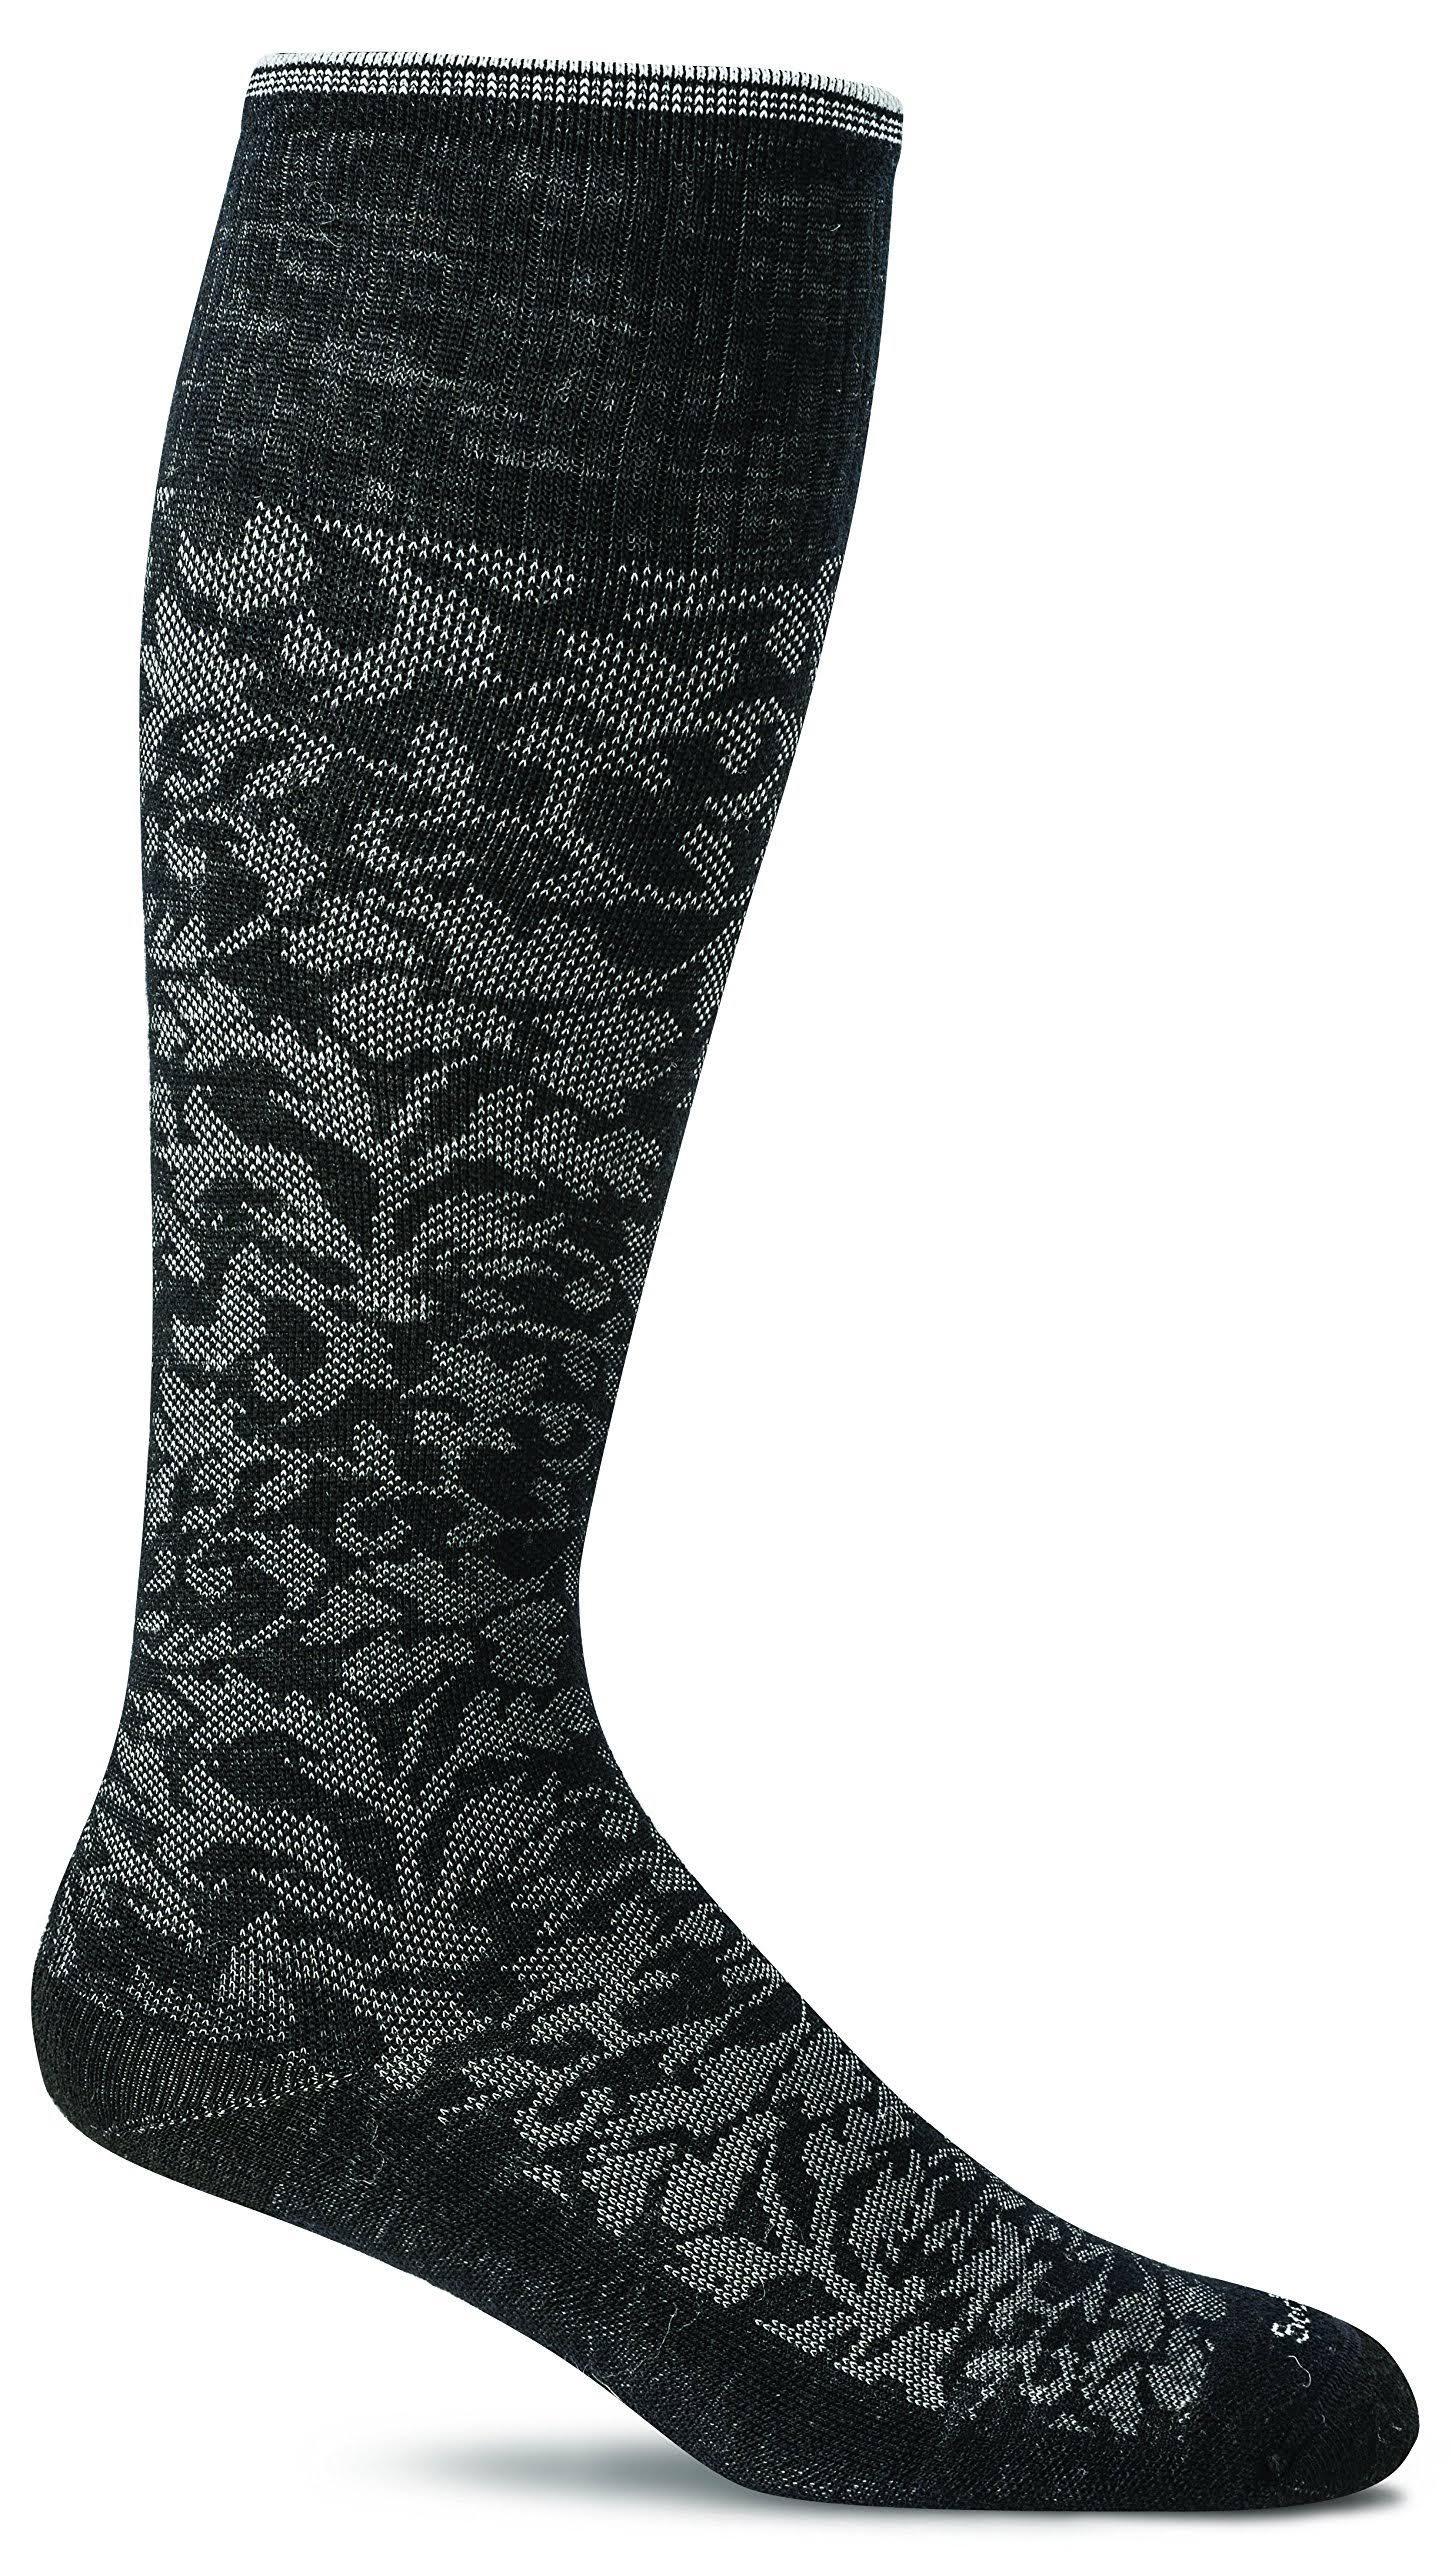 Sockwell Damask Knee High Multi Women's Socks - Black